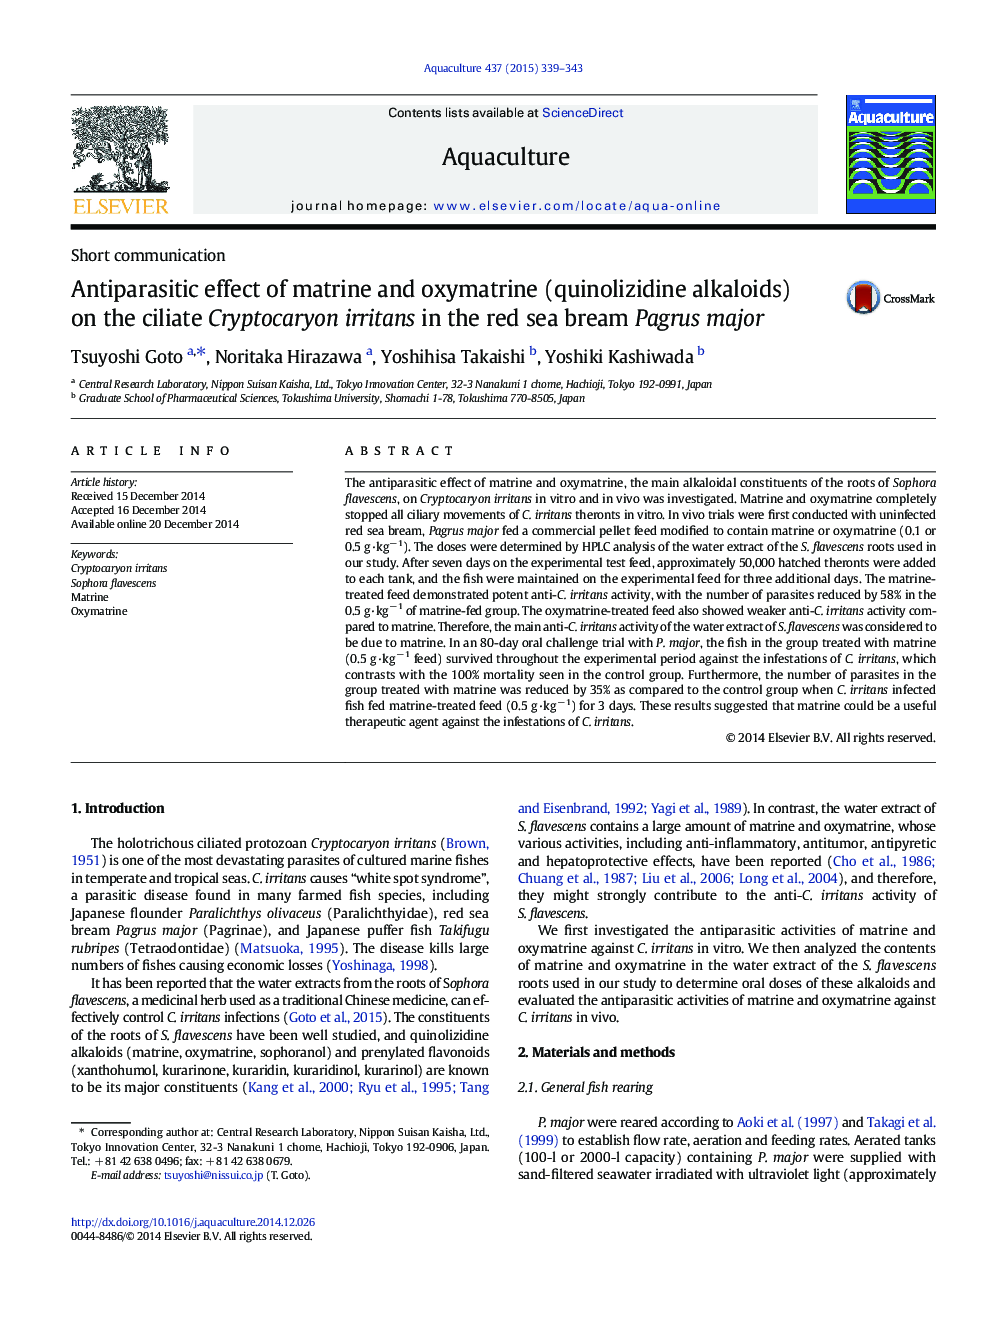 اثر ضد انگلی ماتریون و اکسیماتروین (آلوالیدید هایینولیزیدین) بر روی کرم پستانداران کریپتوکاریون در ماهی قزل آلا سرخ 